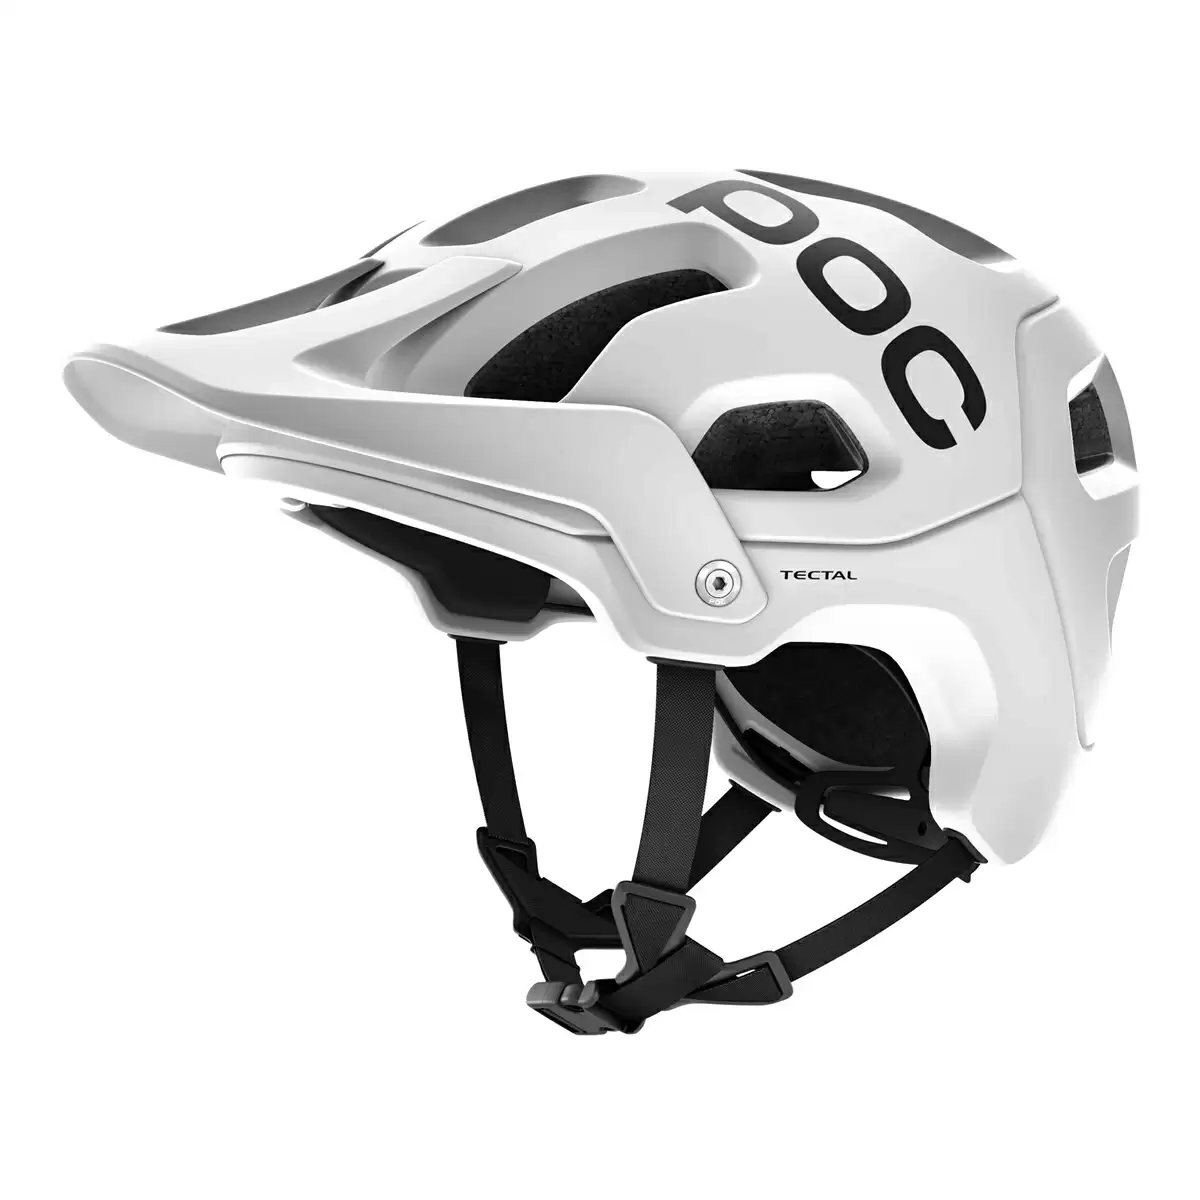 Enduro helmet Tectal white size XL-XXL (59-62cm) - image